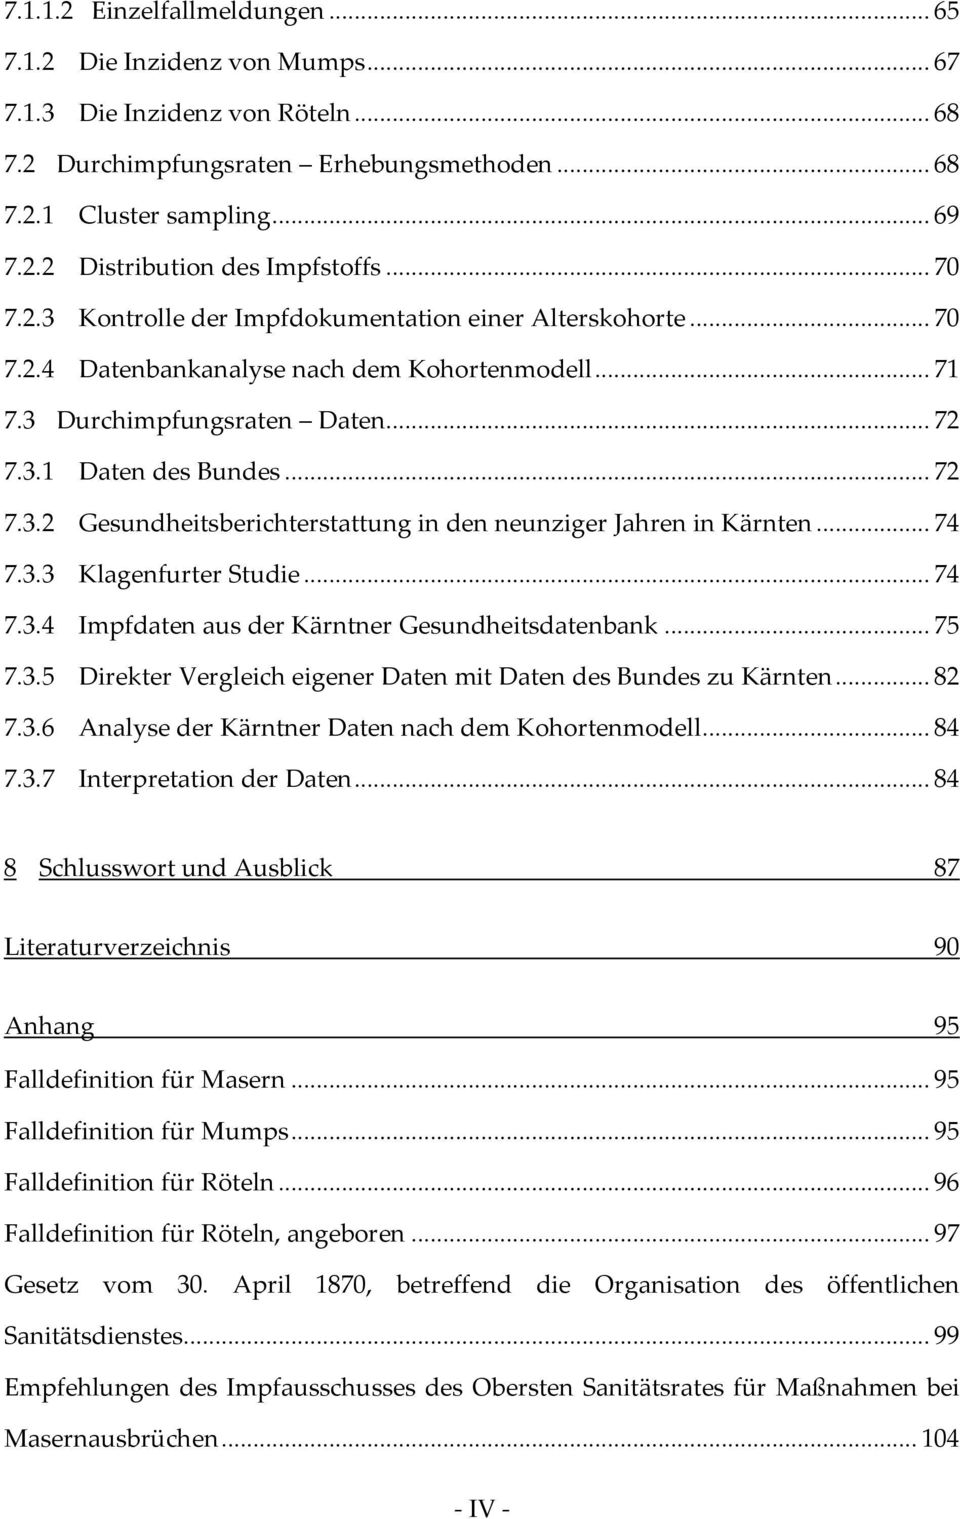 .. 74 7.3.3 Klagenfurter Studie... 74 7.3.4 Impfdaten aus der Kärntner Gesundheitsdatenbank... 75 7.3.5 Direkter Vergleich eigener Daten mit Daten des Bundes zu Kärnten... 82 7.3.6 Analyse der Kärntner Daten nach dem Kohortenmodell.